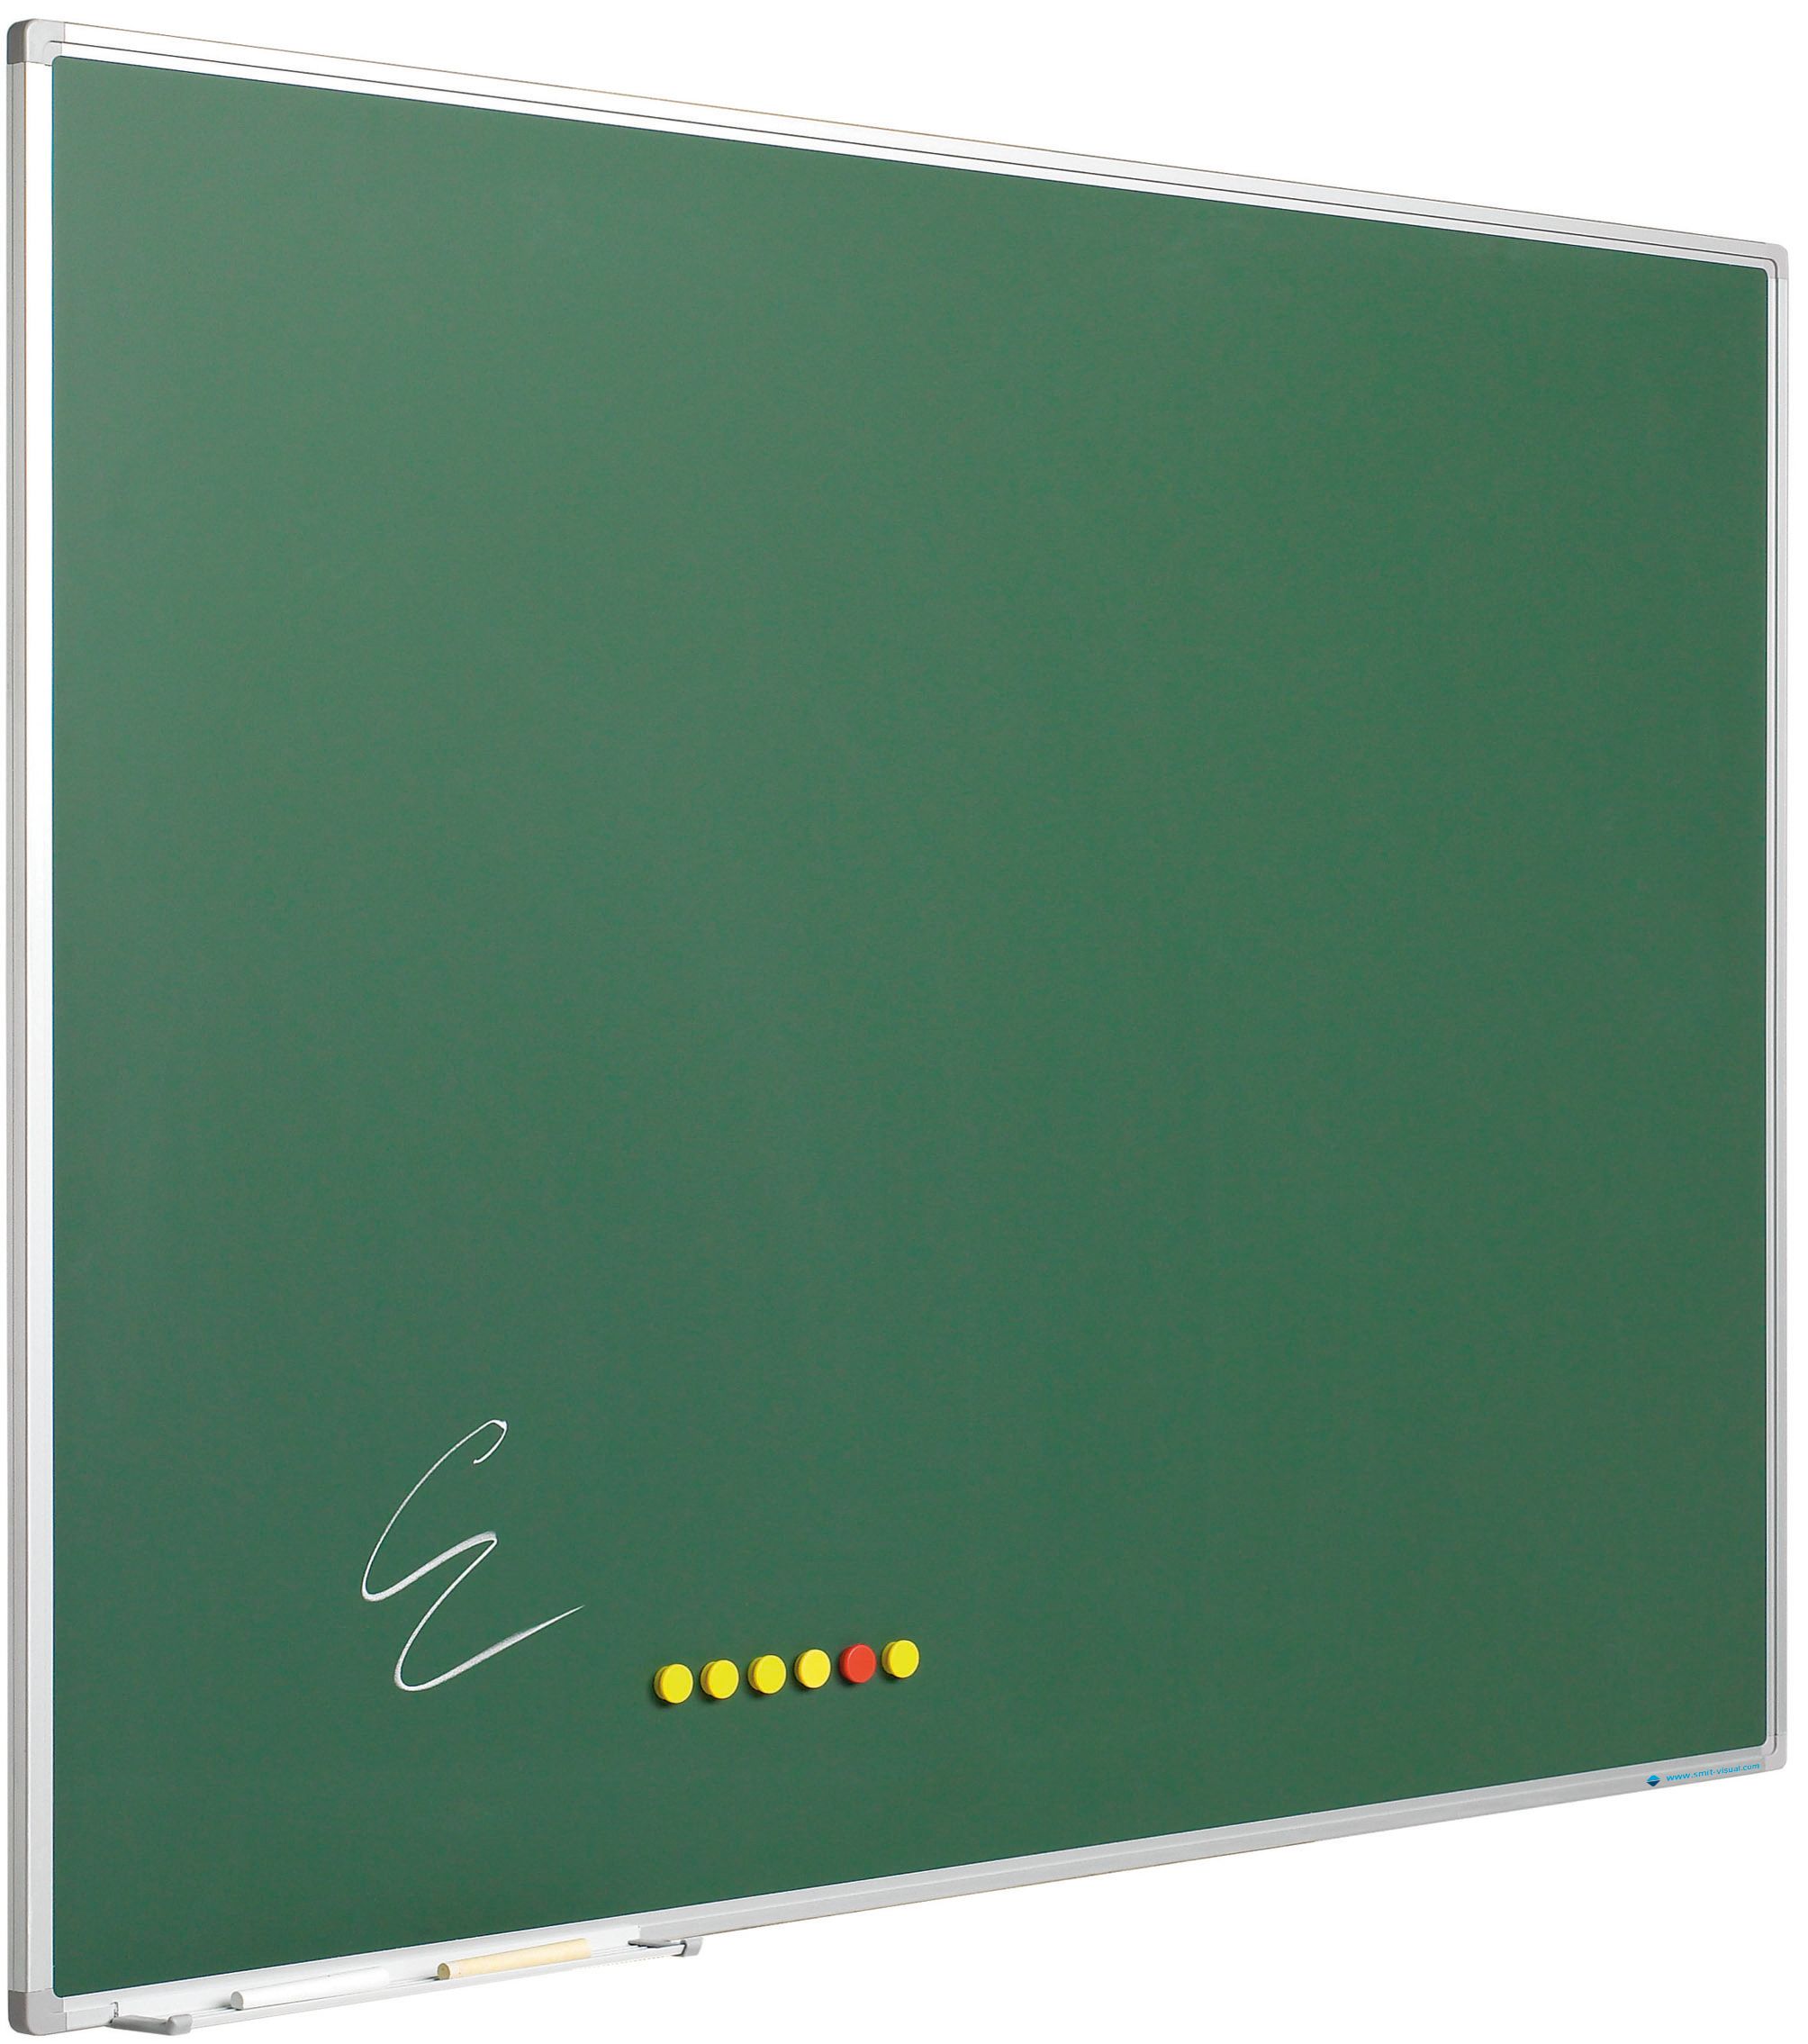 Krijtbord Softline profiel 8mm, emailstaal groen - 150x300 cm